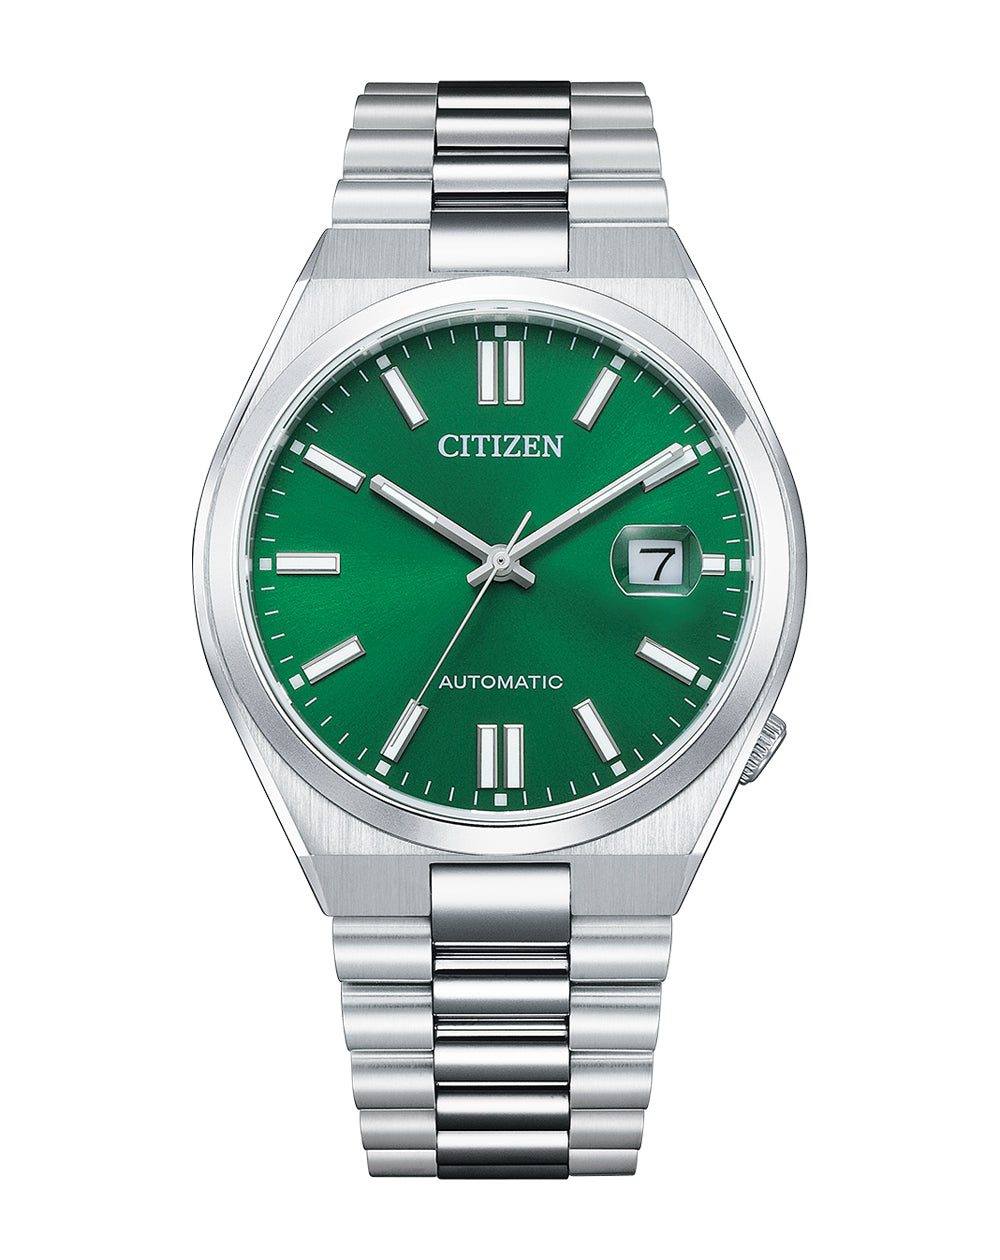 Citizen “TSUYOSA” Collection Green Dial Watch